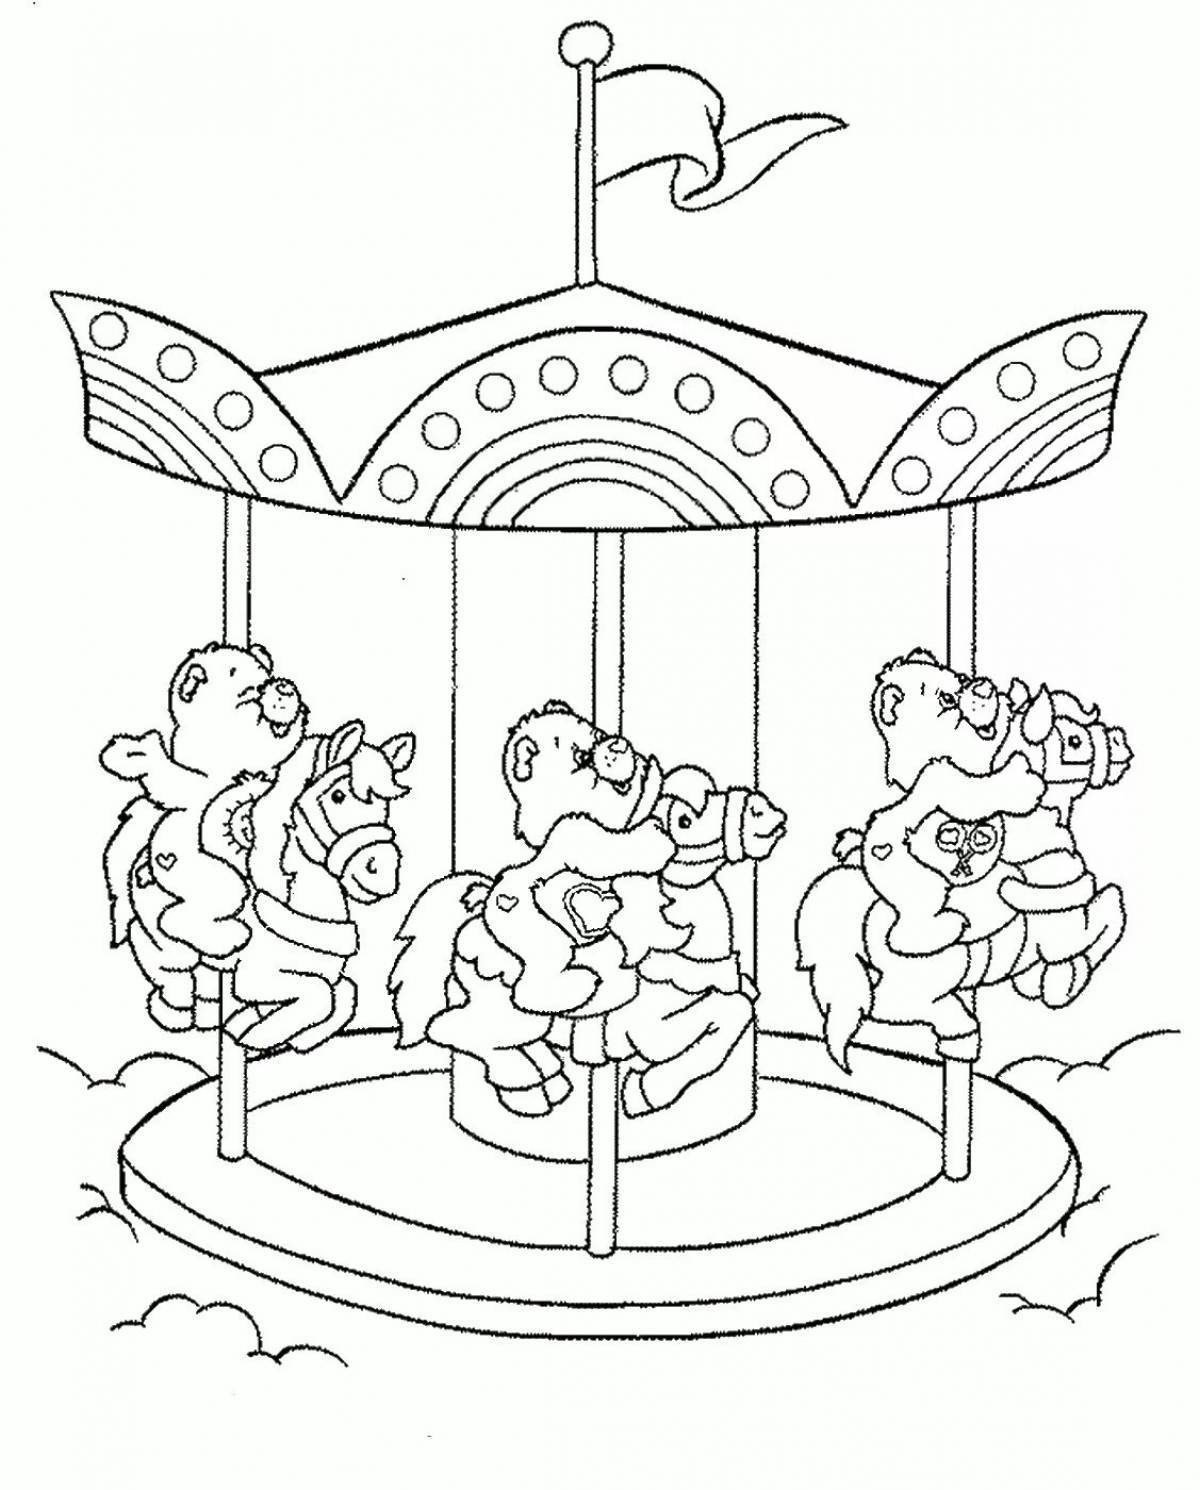 Carousel for children #2